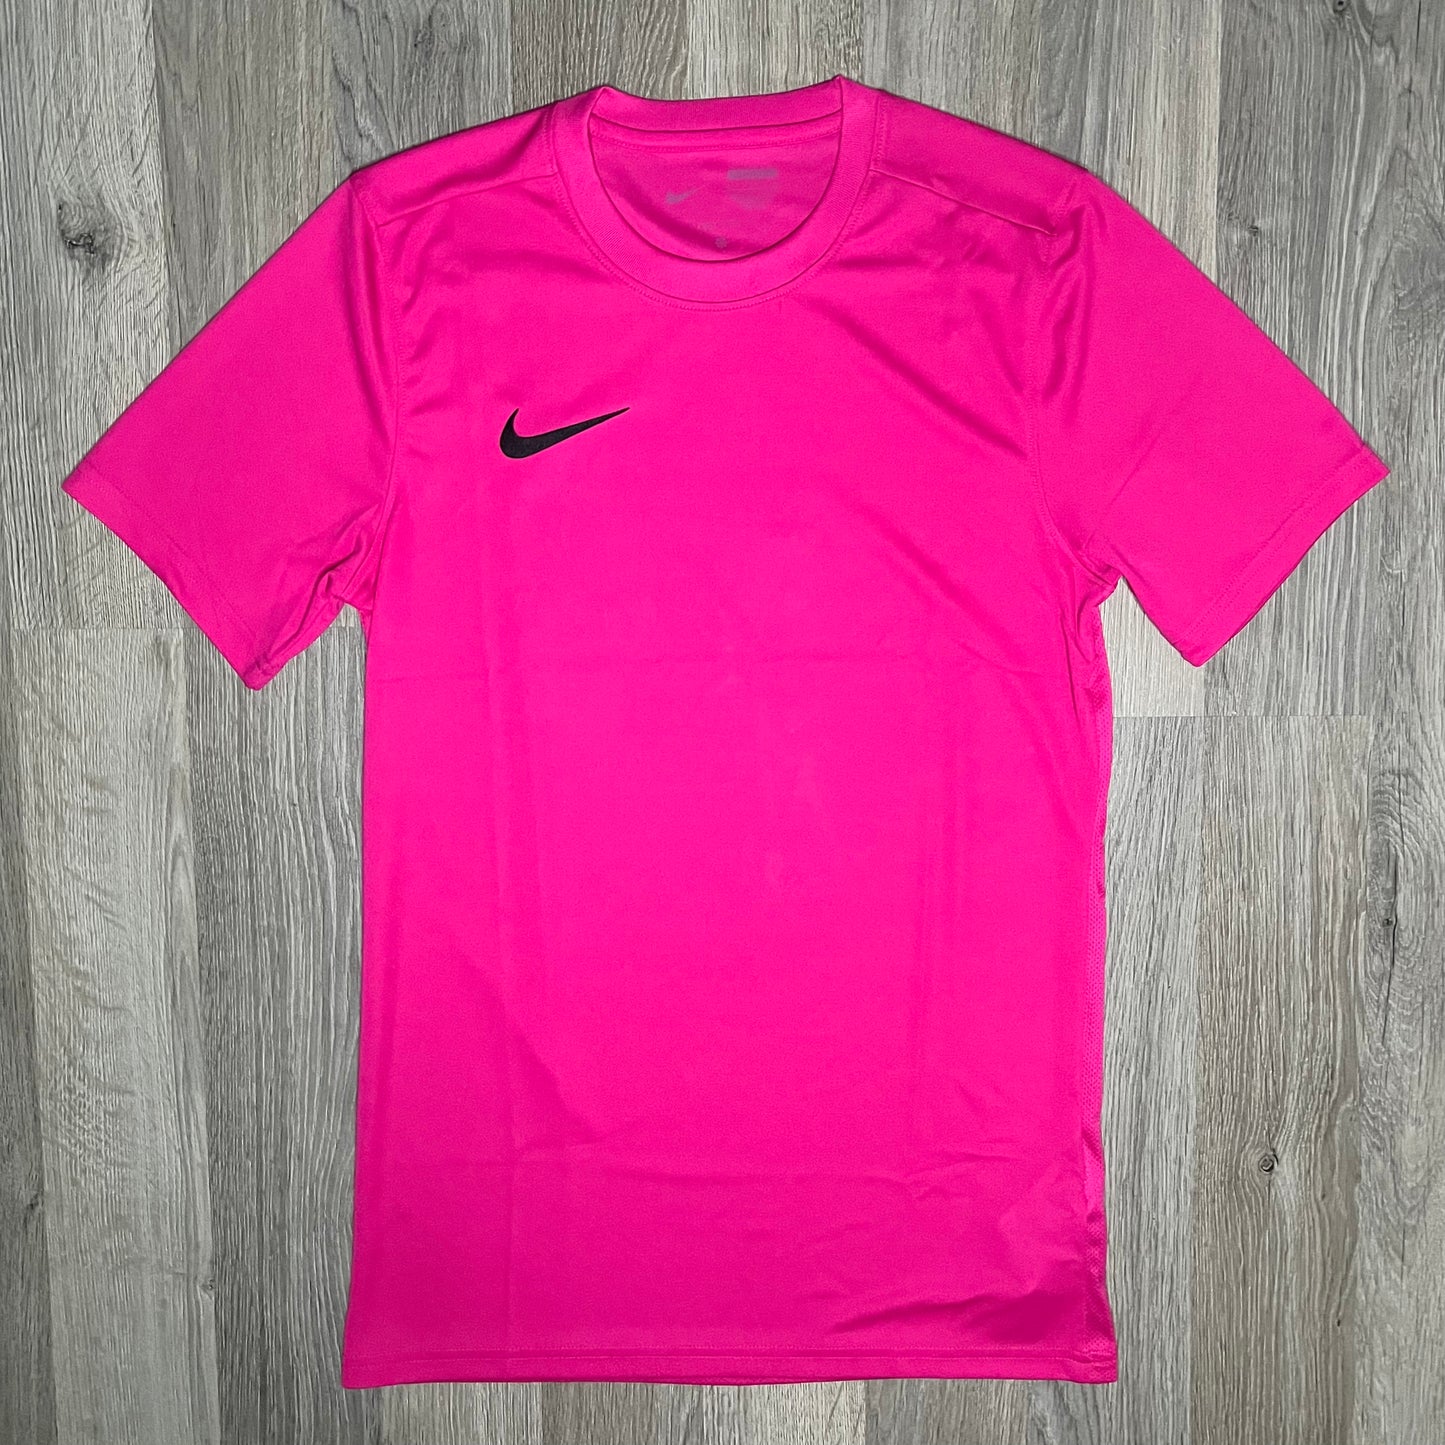 Nike Dri-Fit Tee Pink – RESTOCK3D